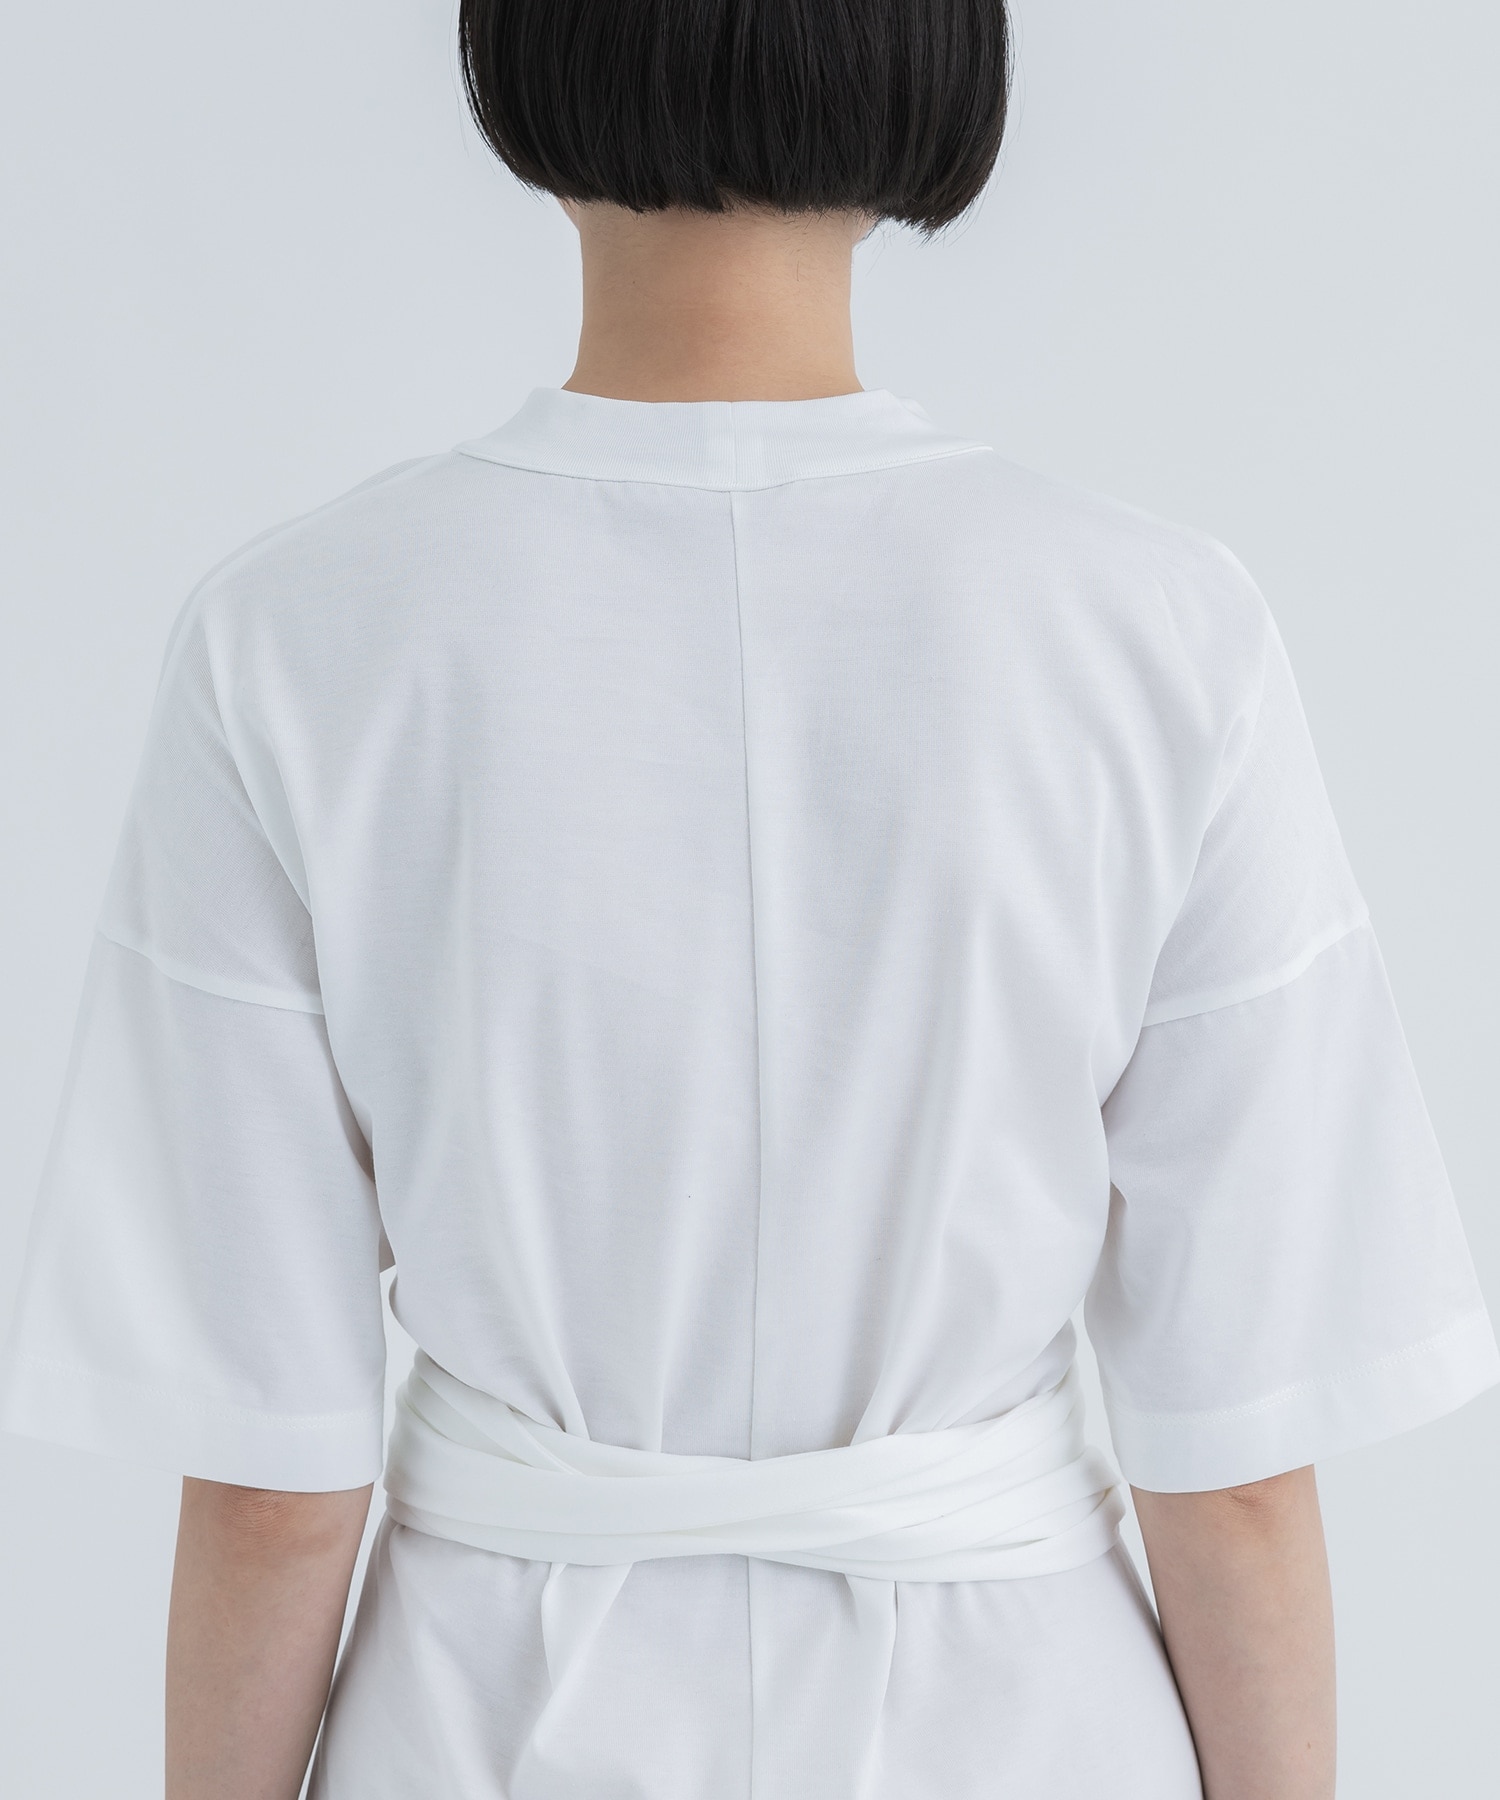 Suvin Cotton Jersey Dress(1 WHITE): Mame Kurogouchi: WOMENS ...